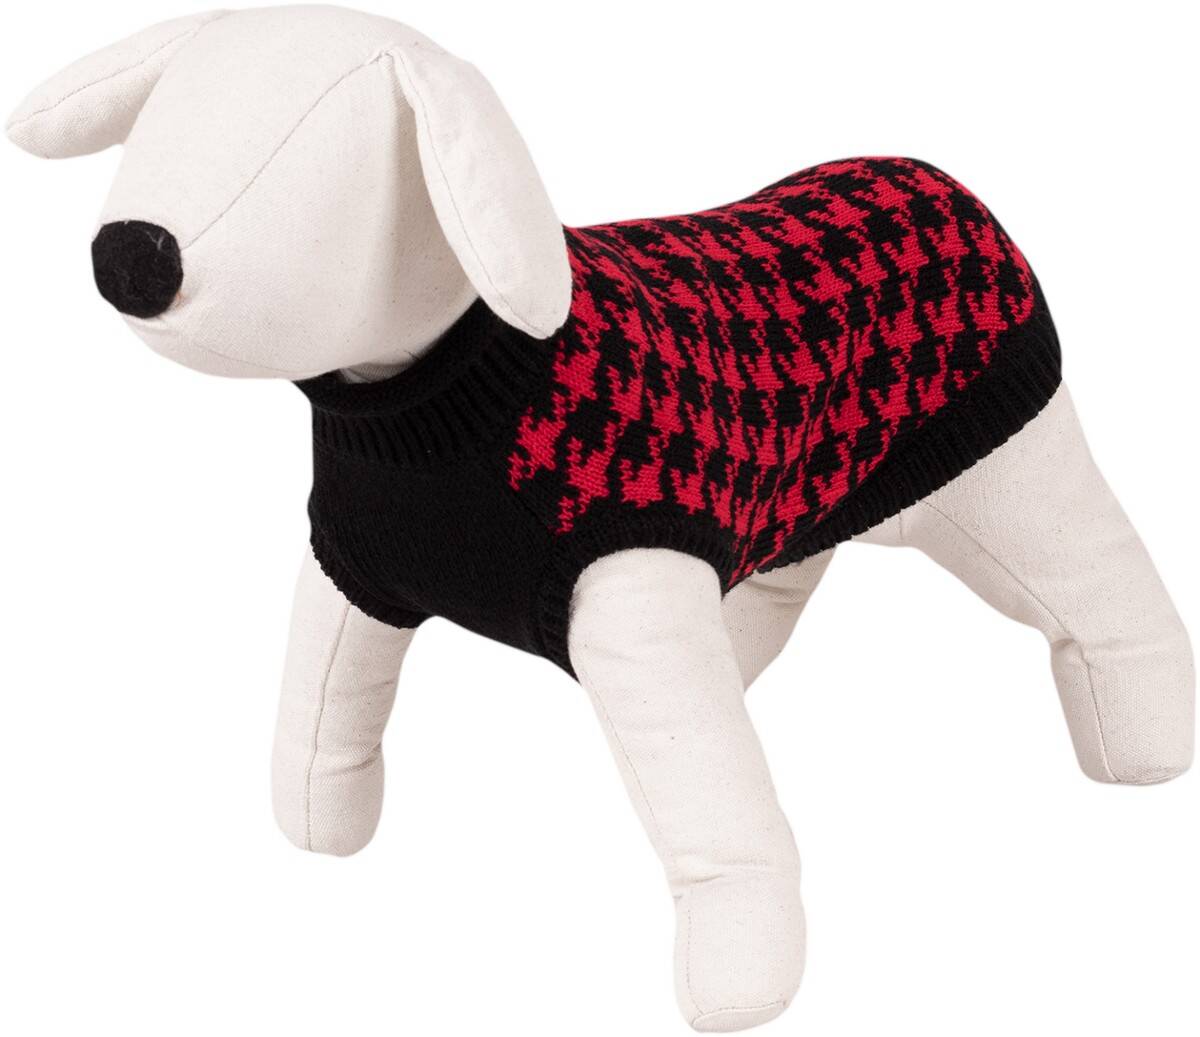 Dog Sweater / Houndstooth Pattern - Happet 480L - Black & Red L - 35cm